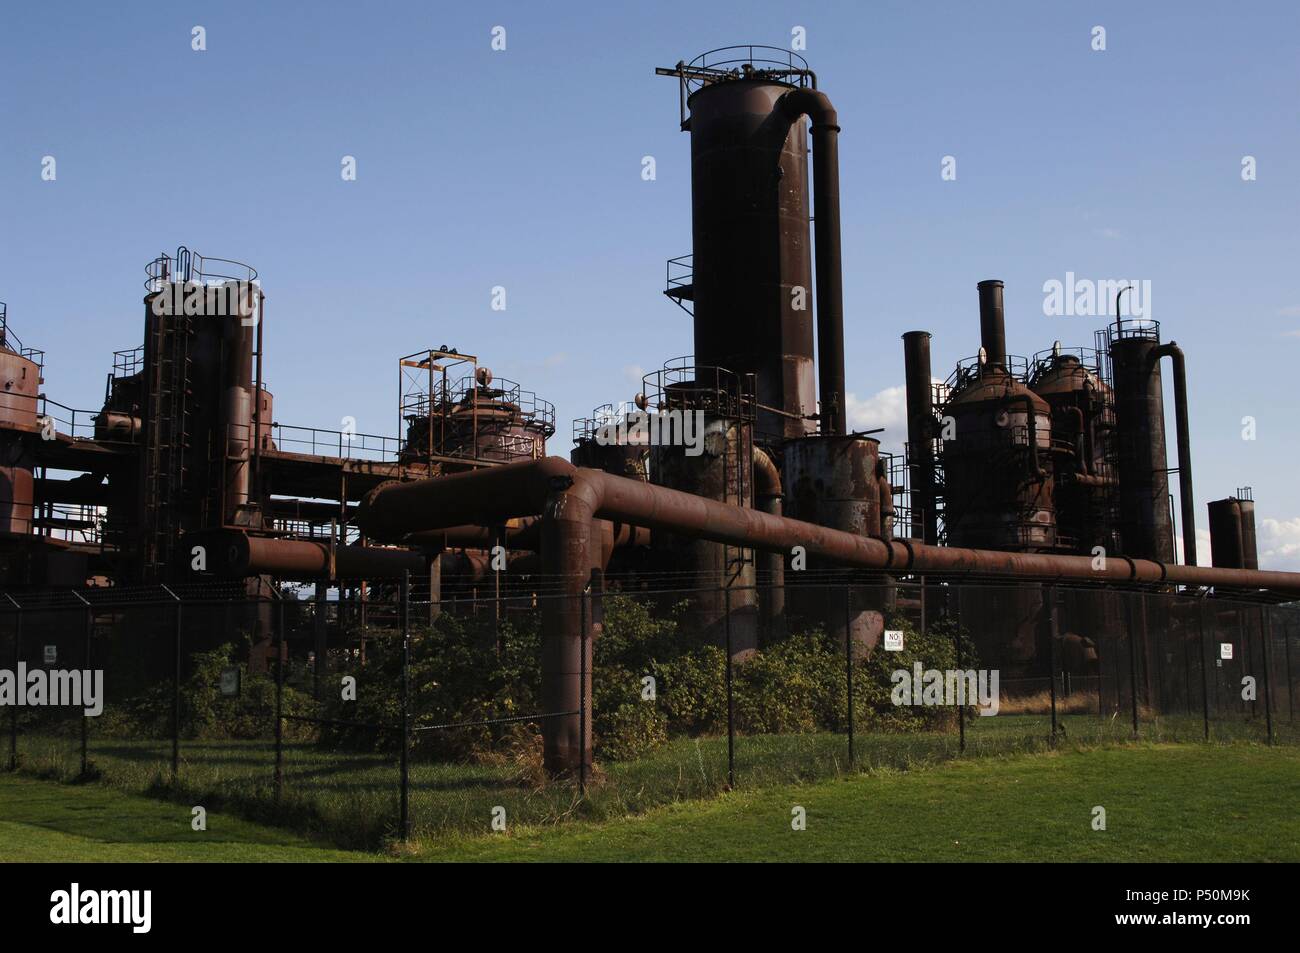 GAS WORKS PARK. Vista de los restos de la antigua fábrica de gas, en cuyos terrenos se sitúa el parque. Seattle. Estado de Washington. Estados Unidos. Stock Photo